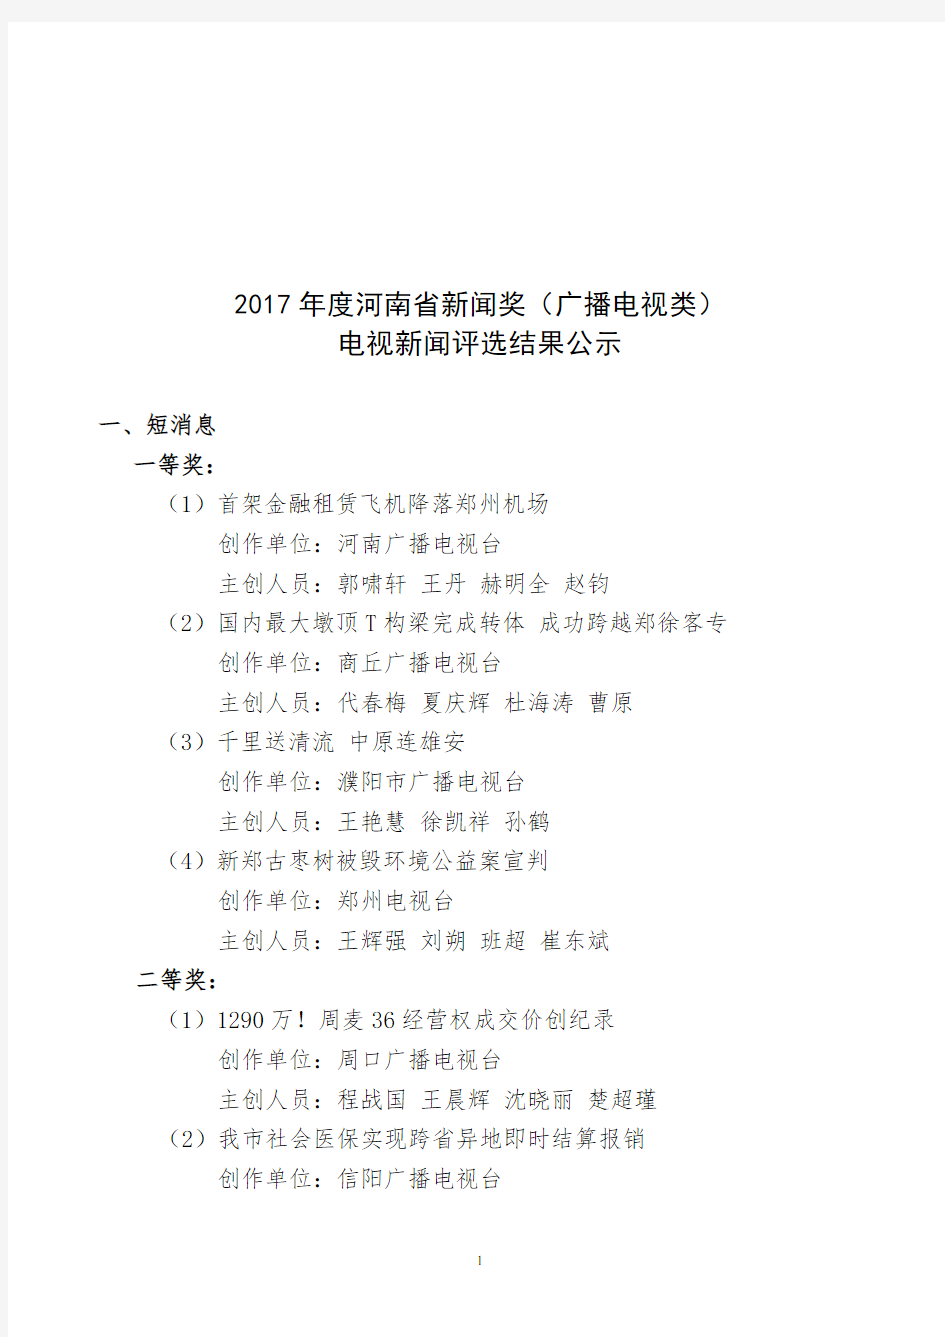 2017年度河南省新闻奖(广播电视类)